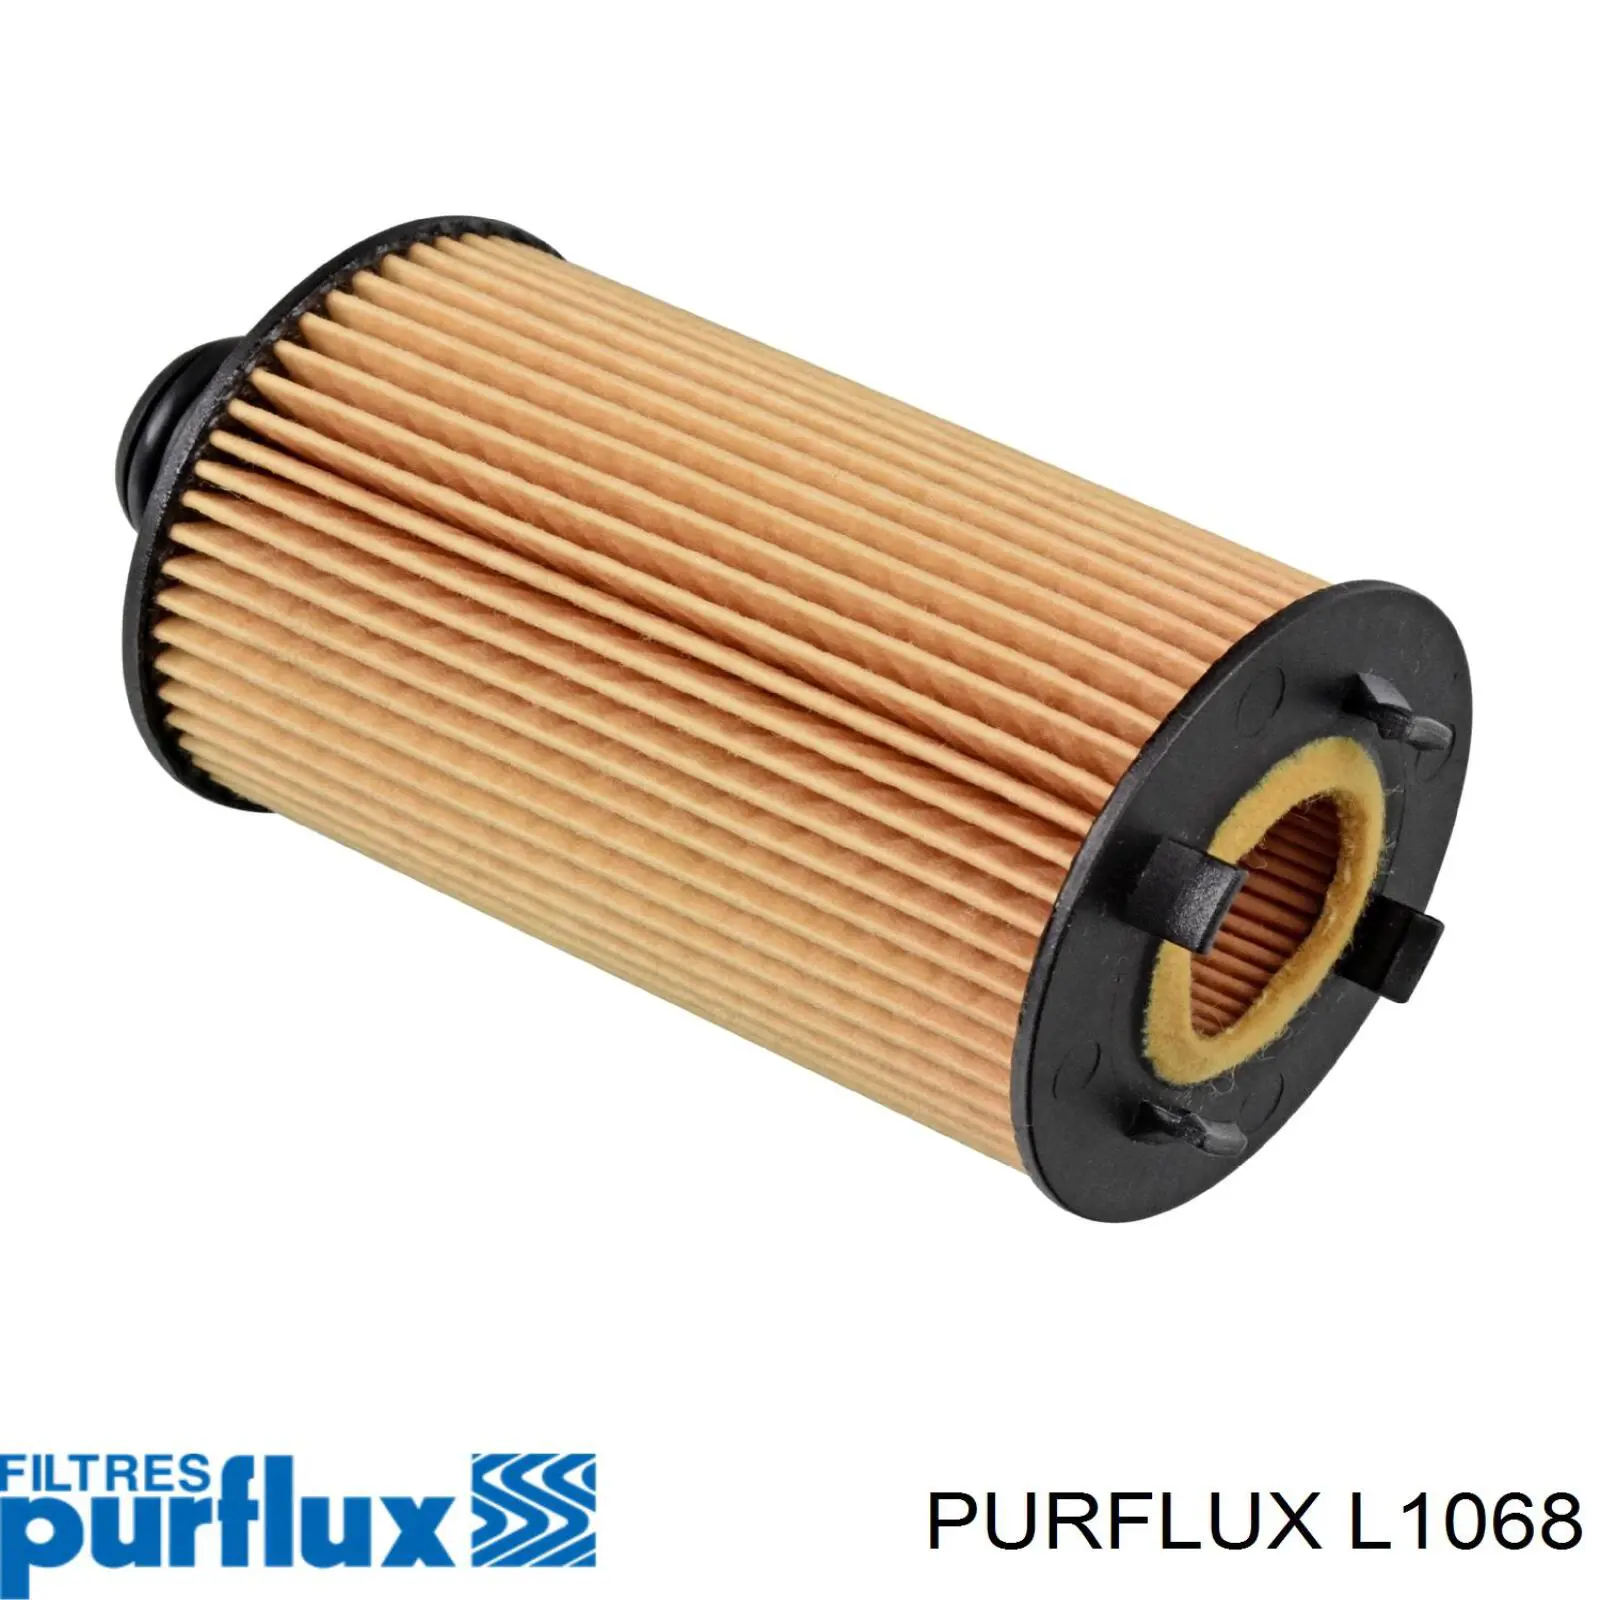 L1068 Purflux filtro de aceite